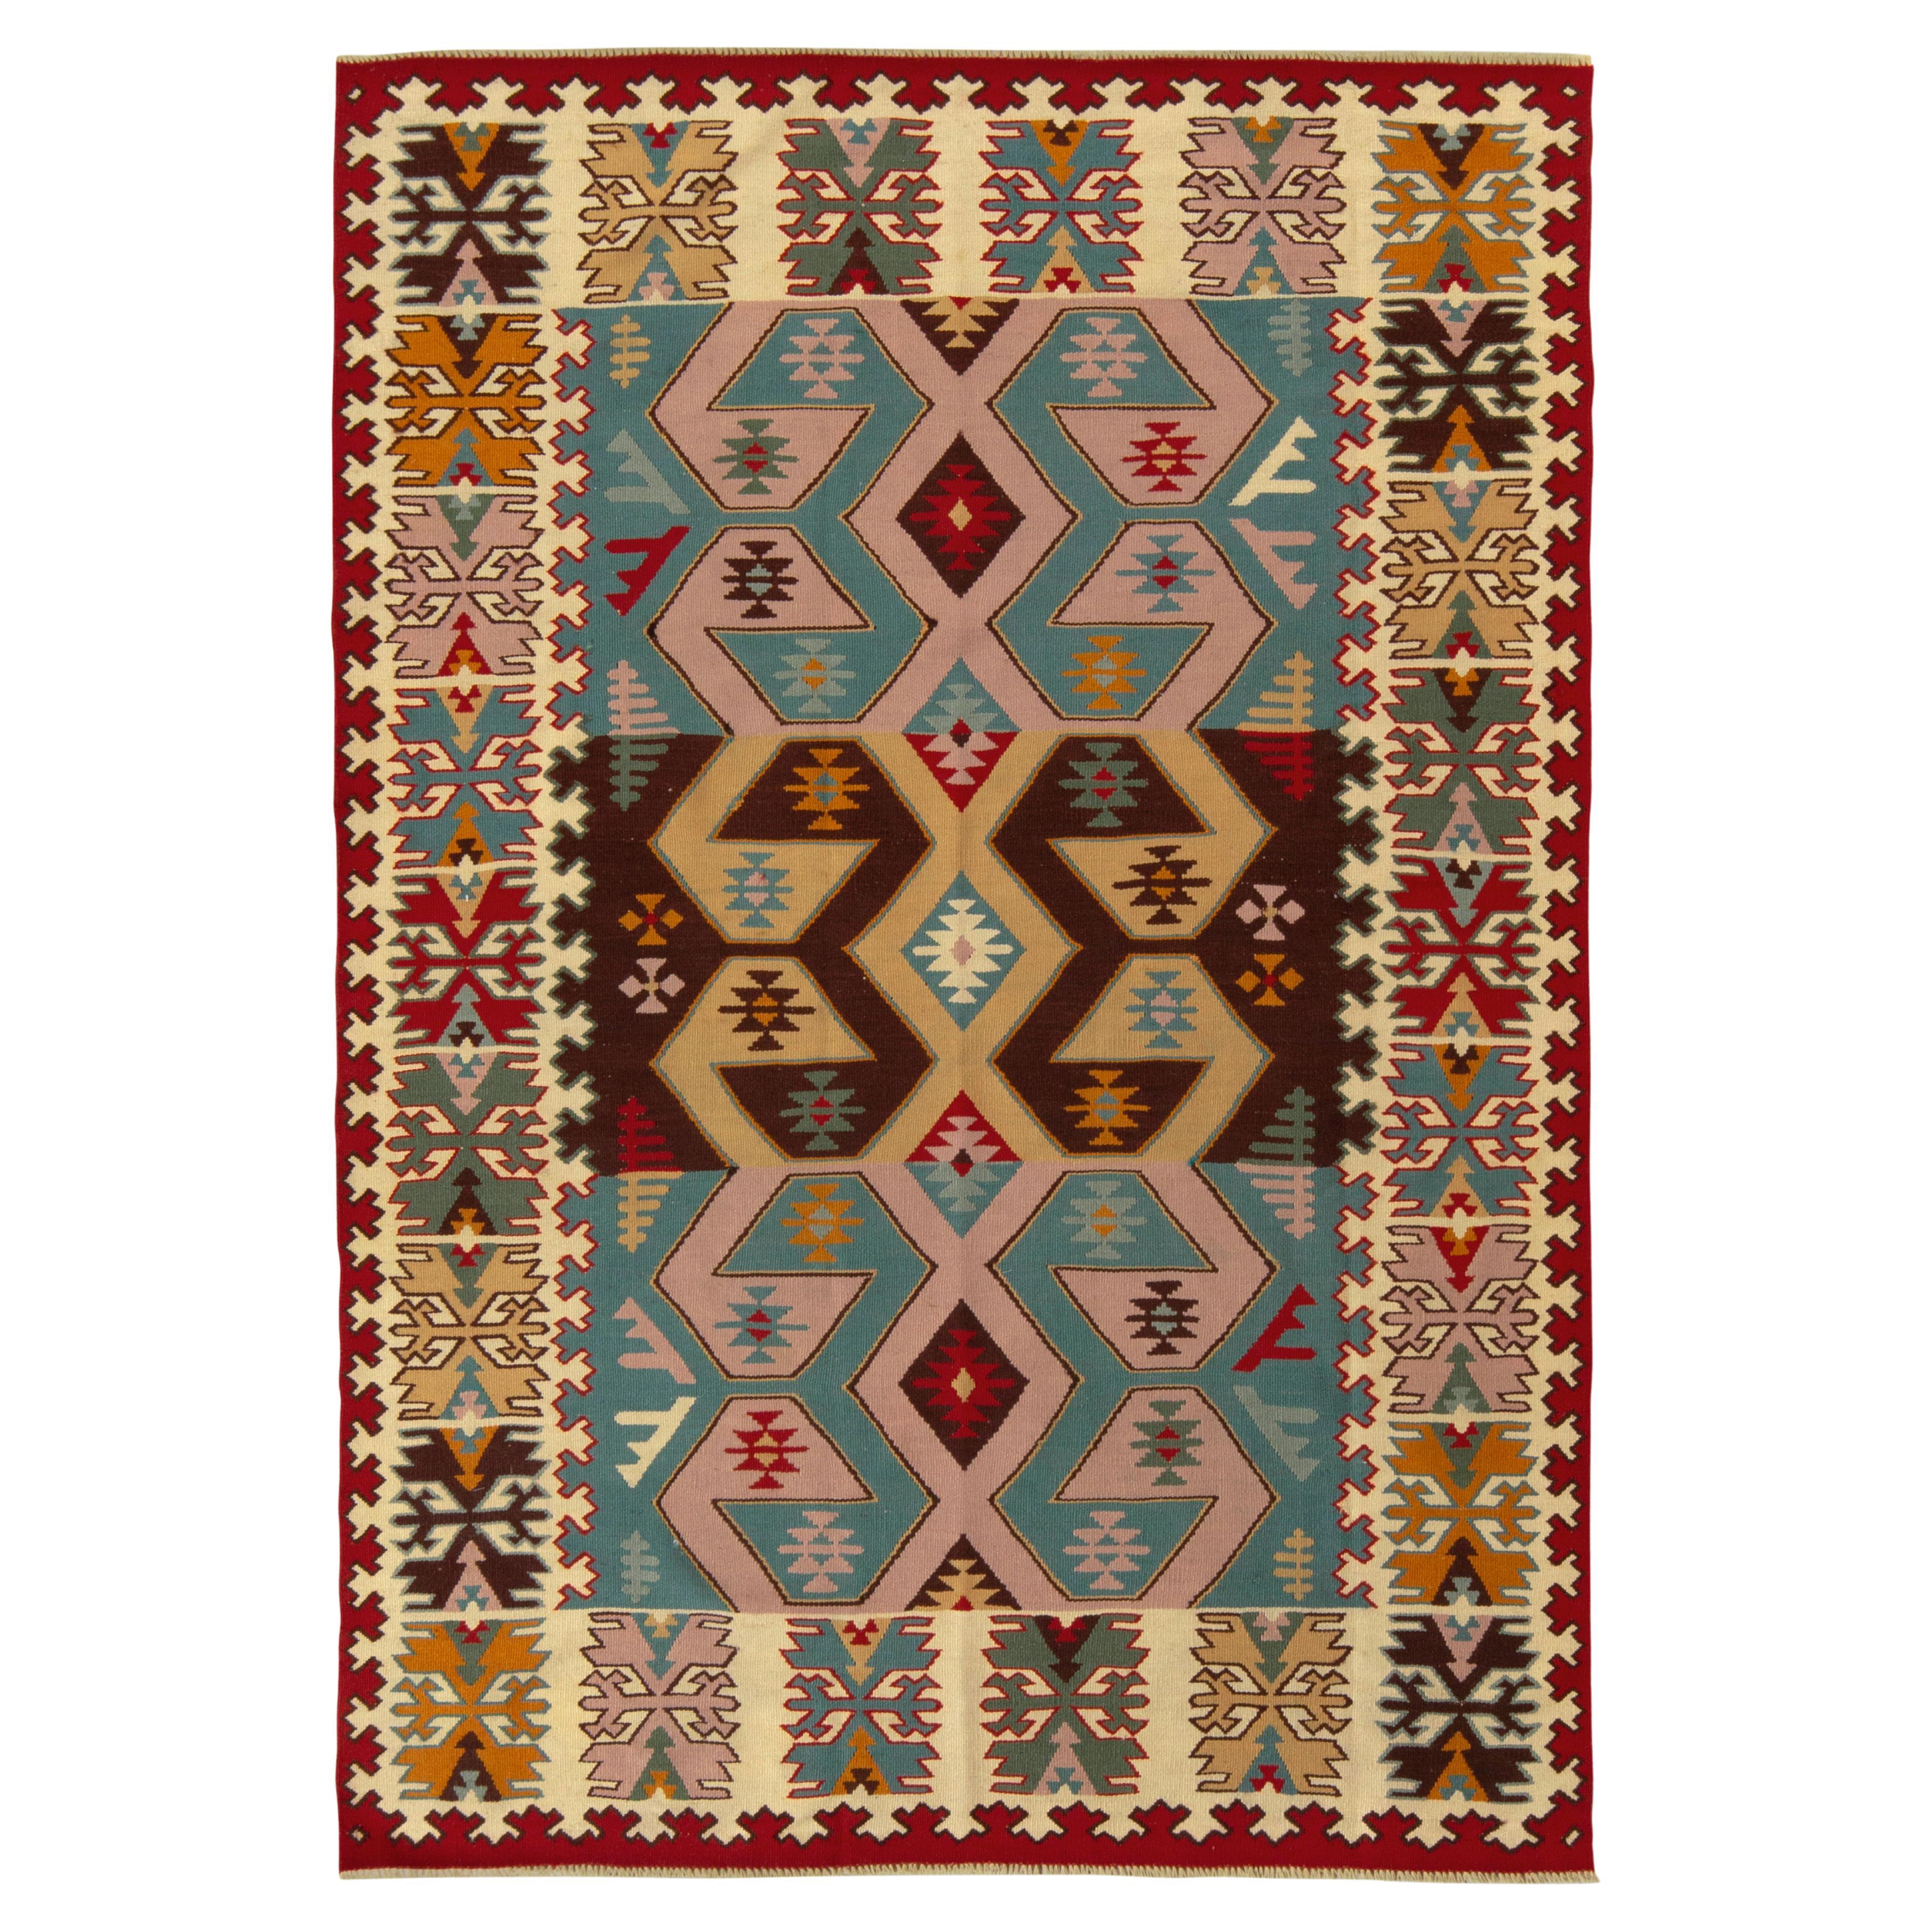 Tapis Kilim turc vintage multicolore à motifs géométriques tribaux par Rug & Kilim